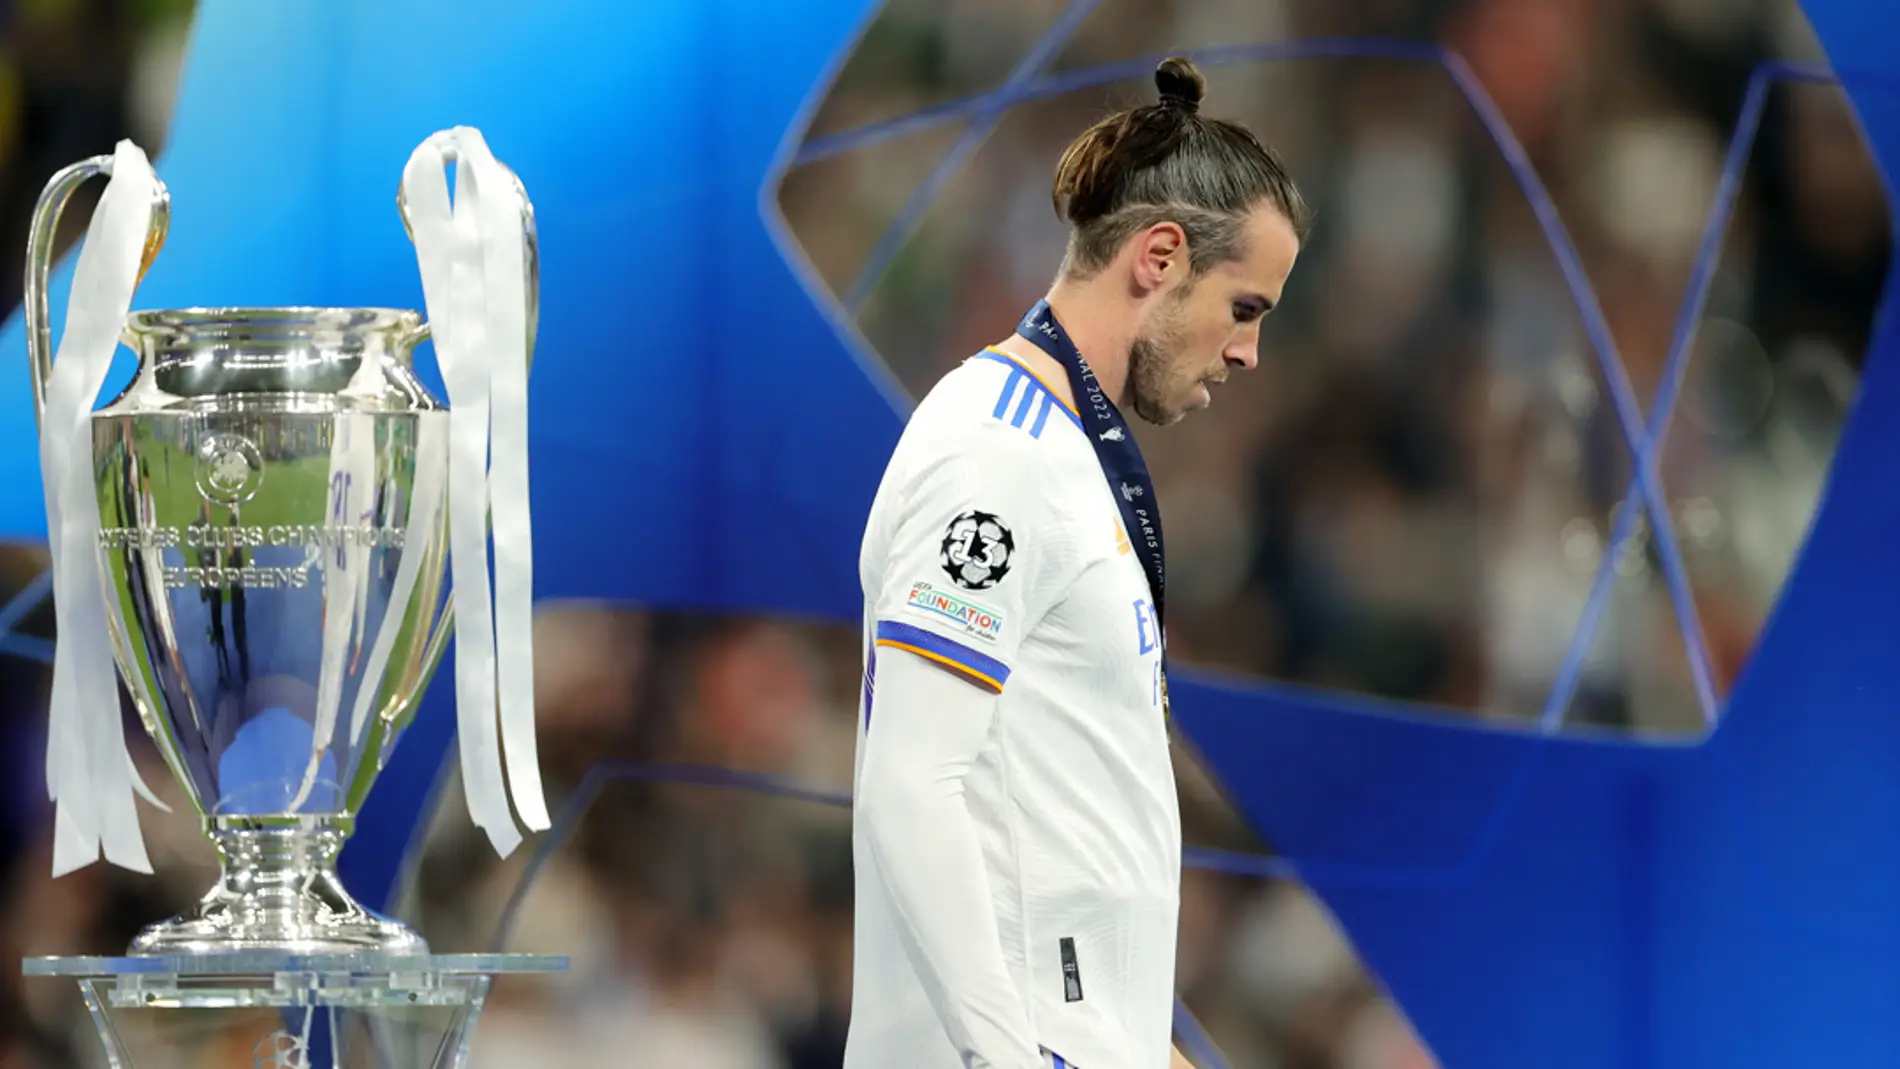 Gareth Bale: “Ser parte de la historia de este club ha sido una experiencia que jamás olvidaré”